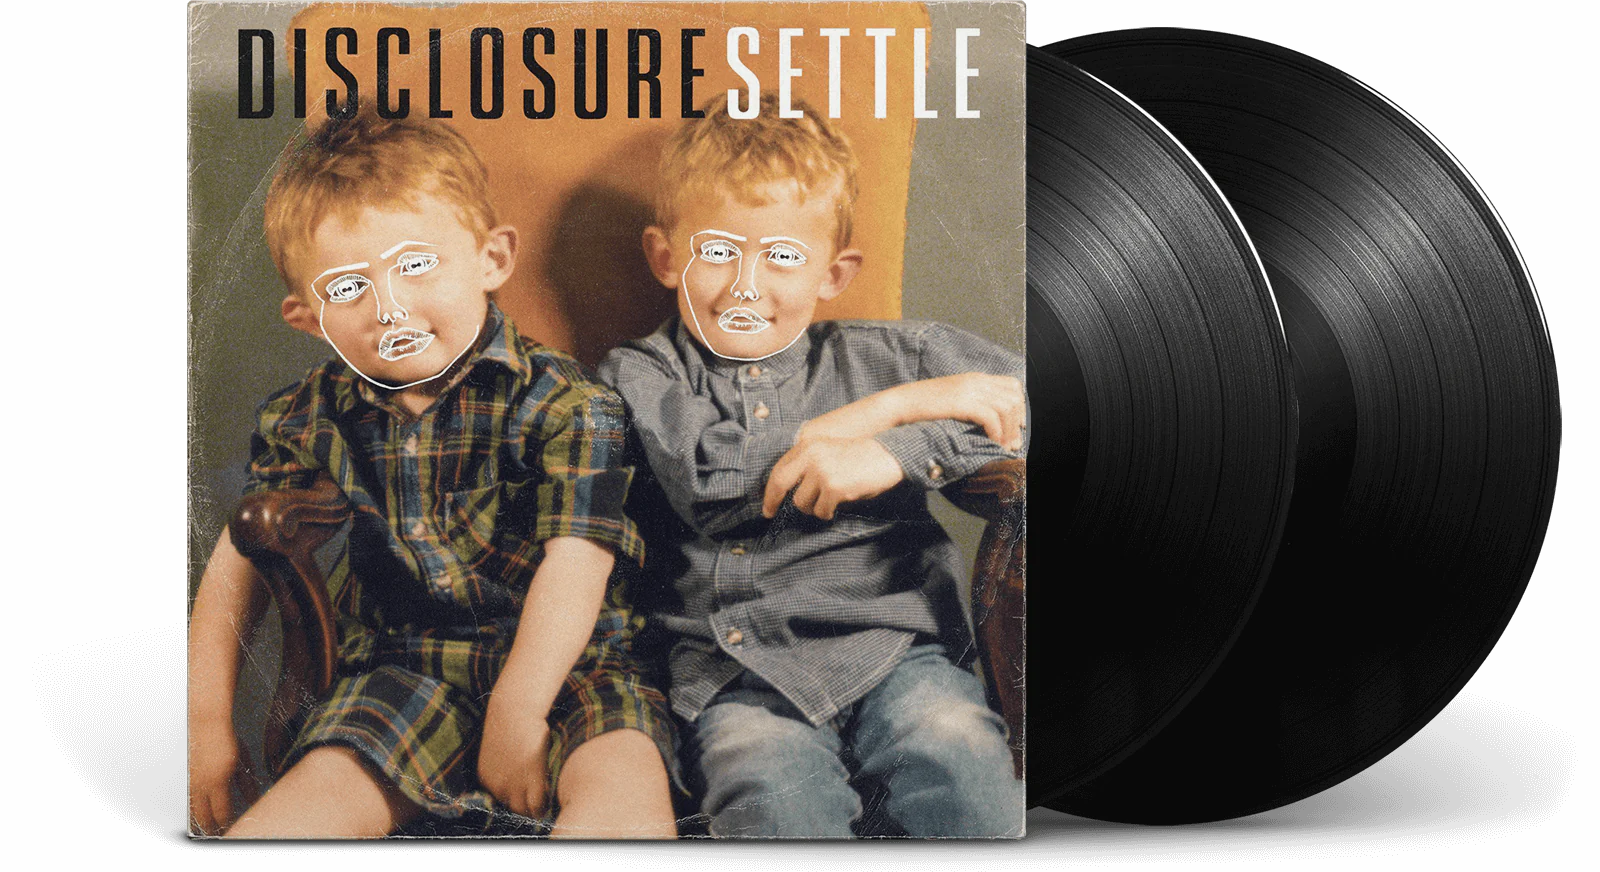 DISCLOSURE - Settle Vinyl - JWrayRecords